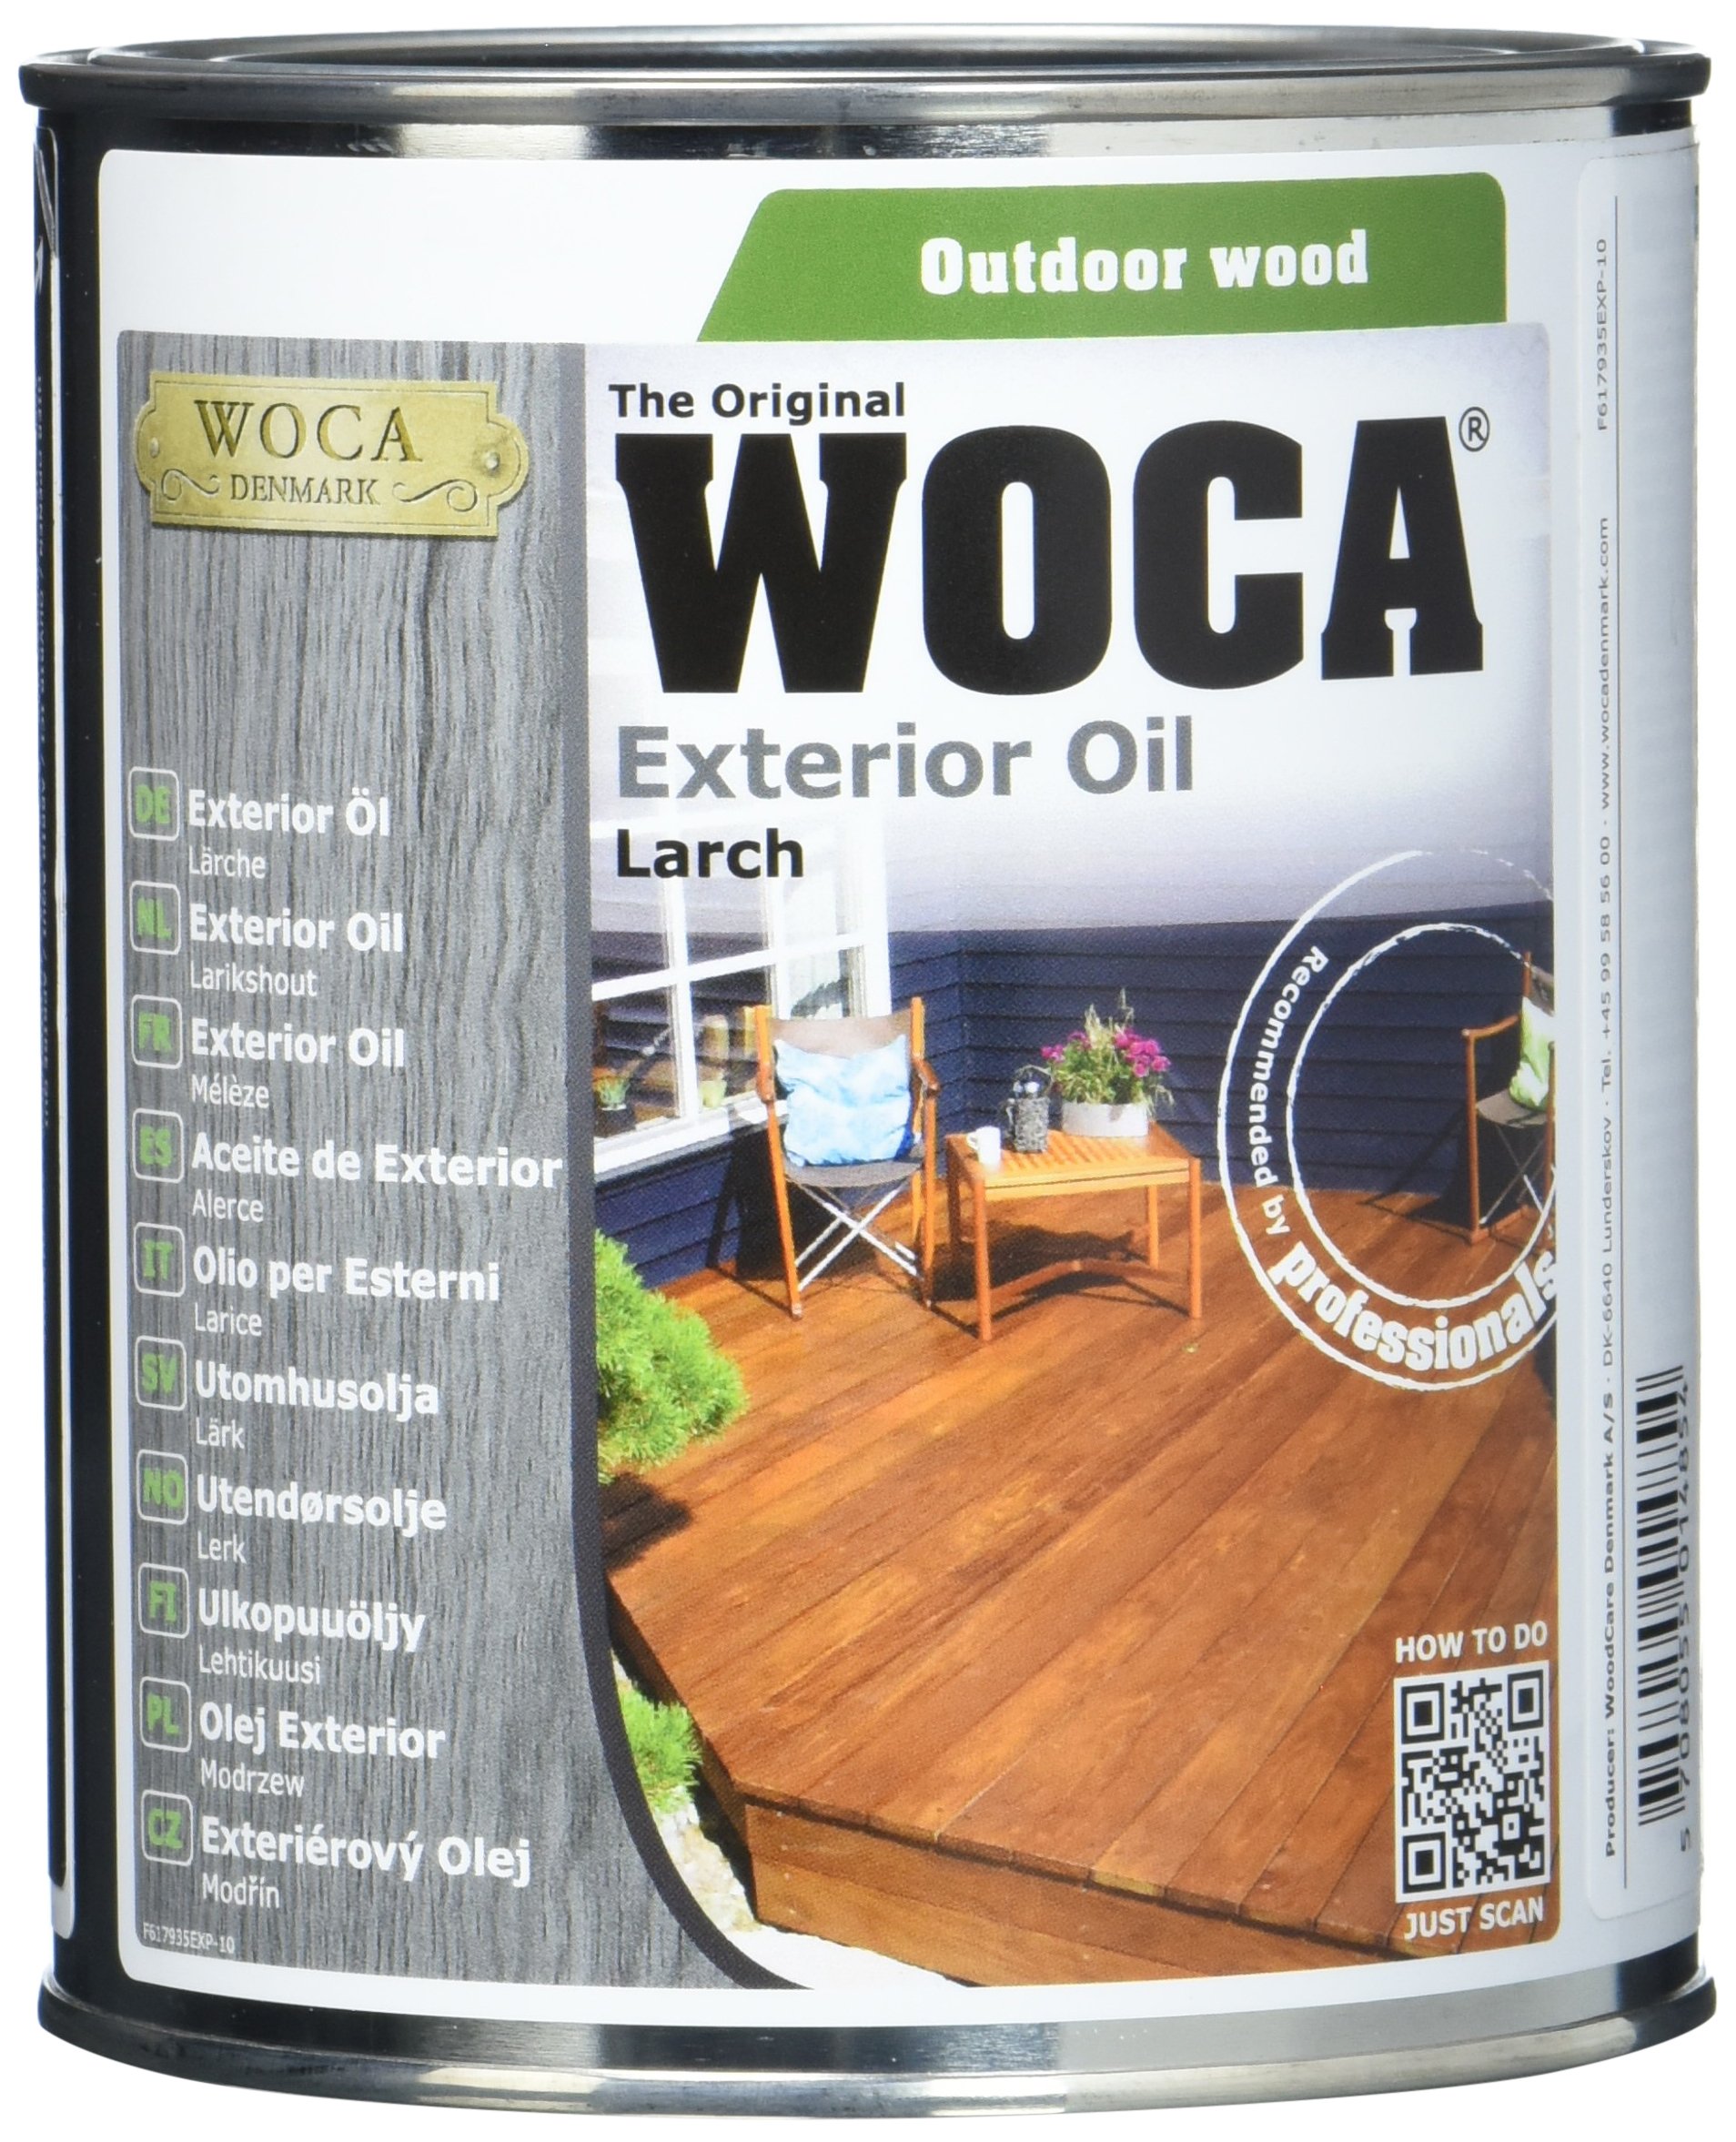 Woca Exterior Wood Oil Lariks - 750 Ml T90-la-9 617935a